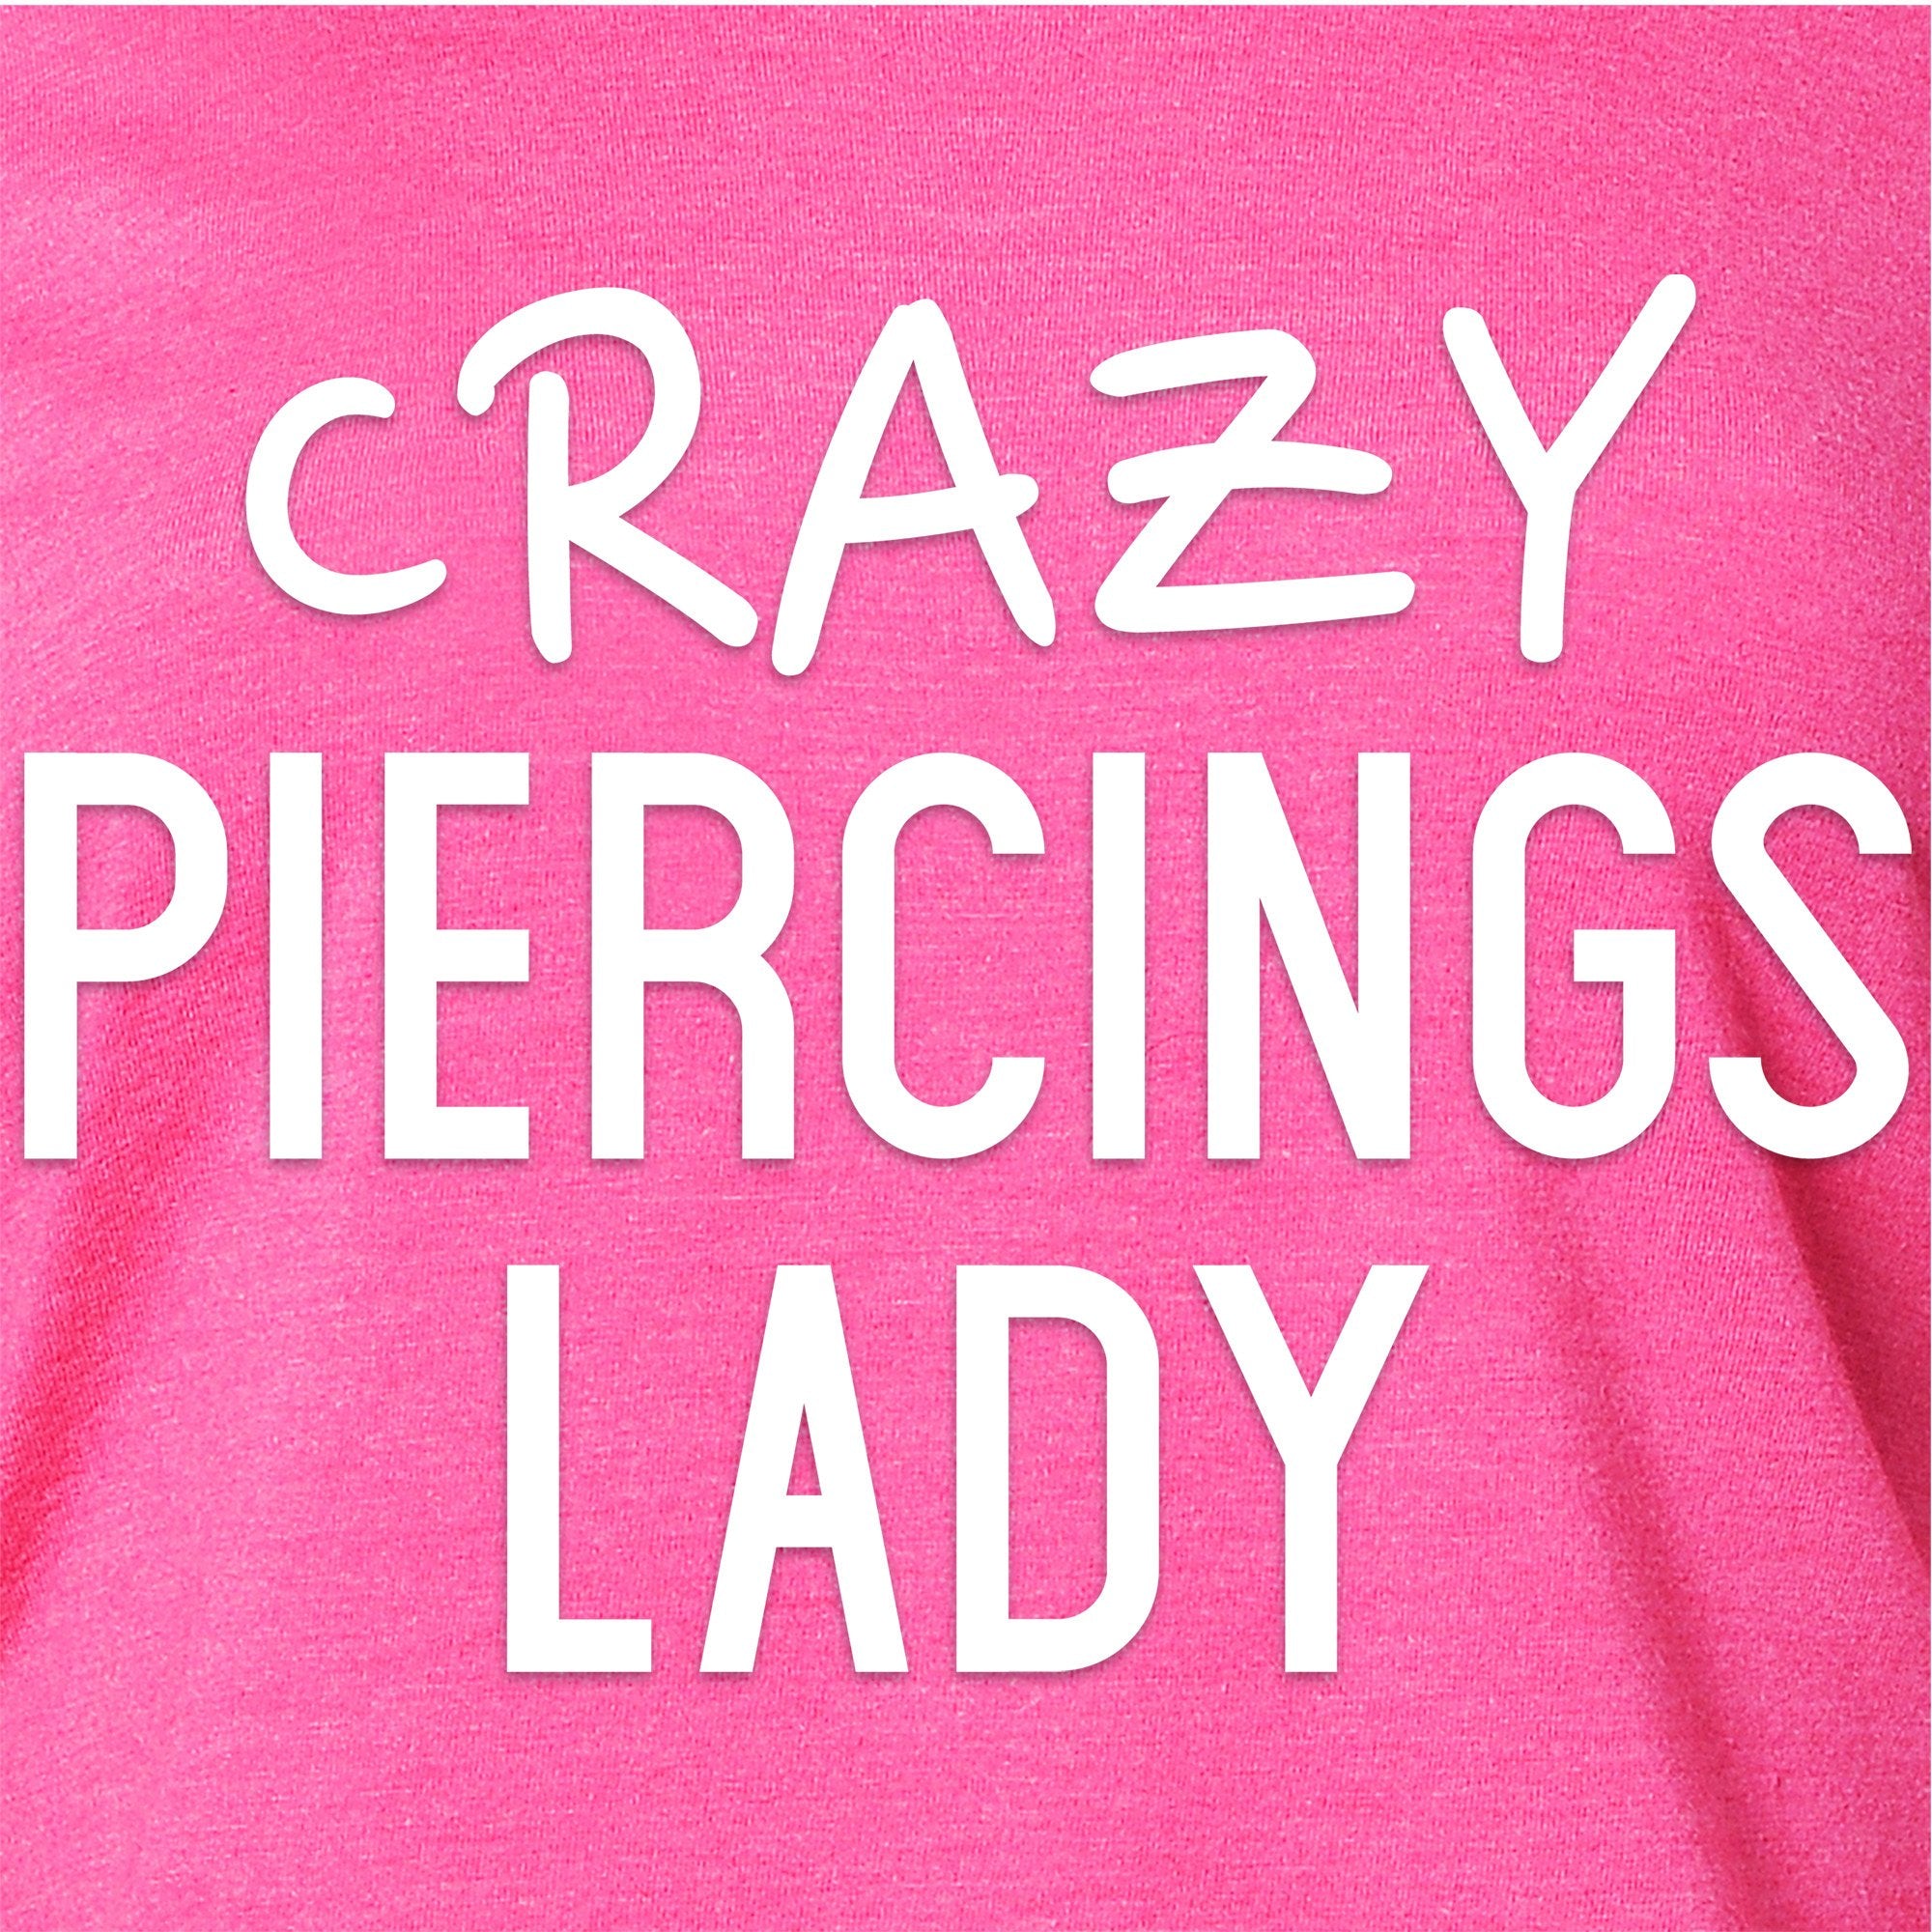 Crazy Piercings Lady Tapered Long Sleeve Hoodie